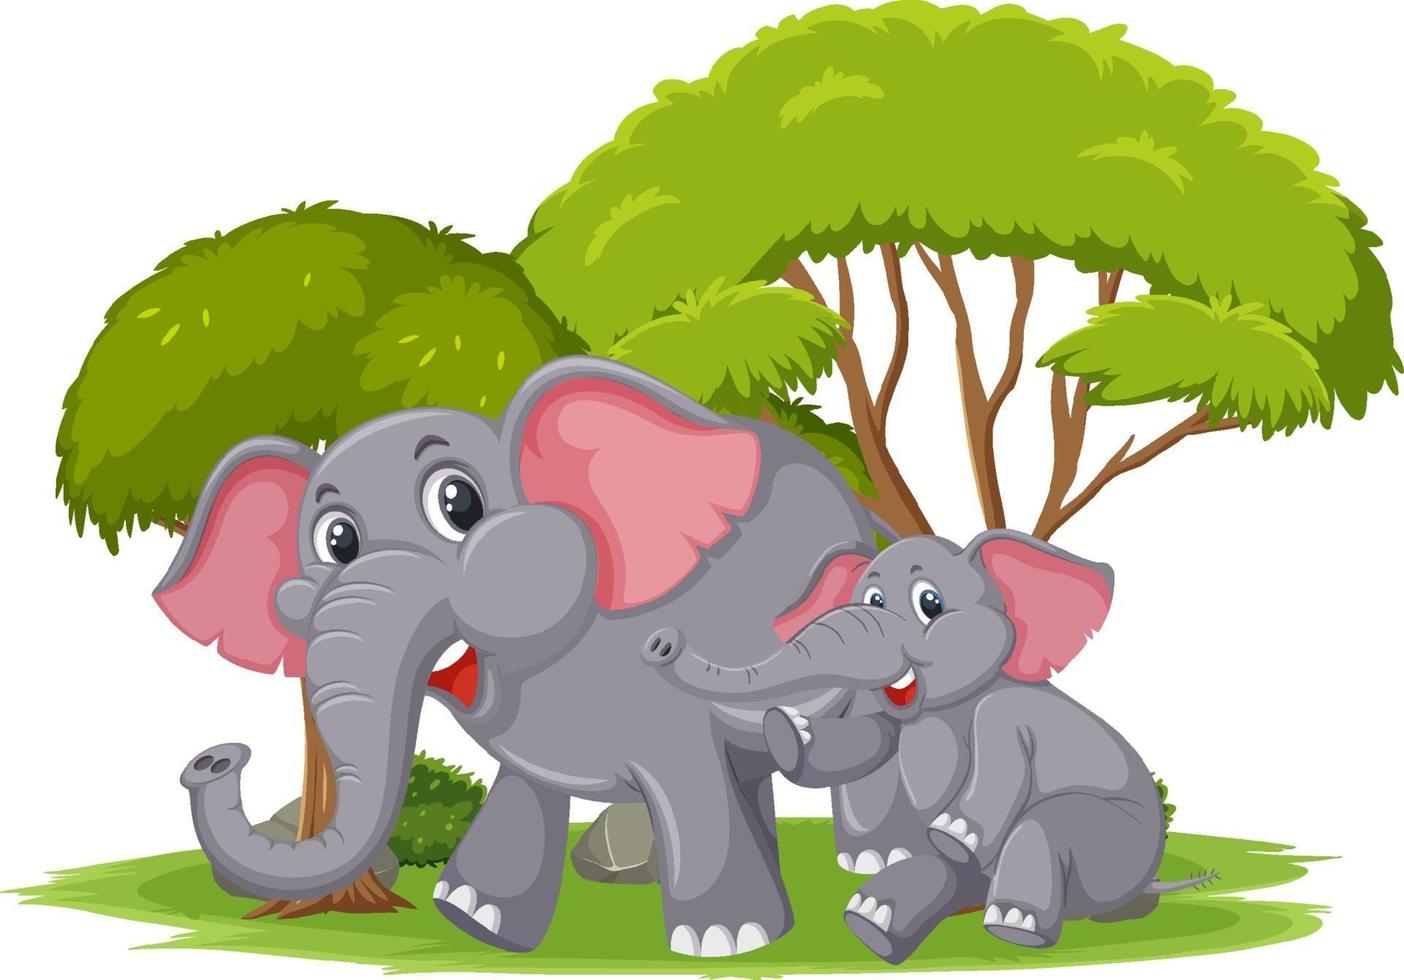 scène isolée avec maman et jeunes éléphants vecteur